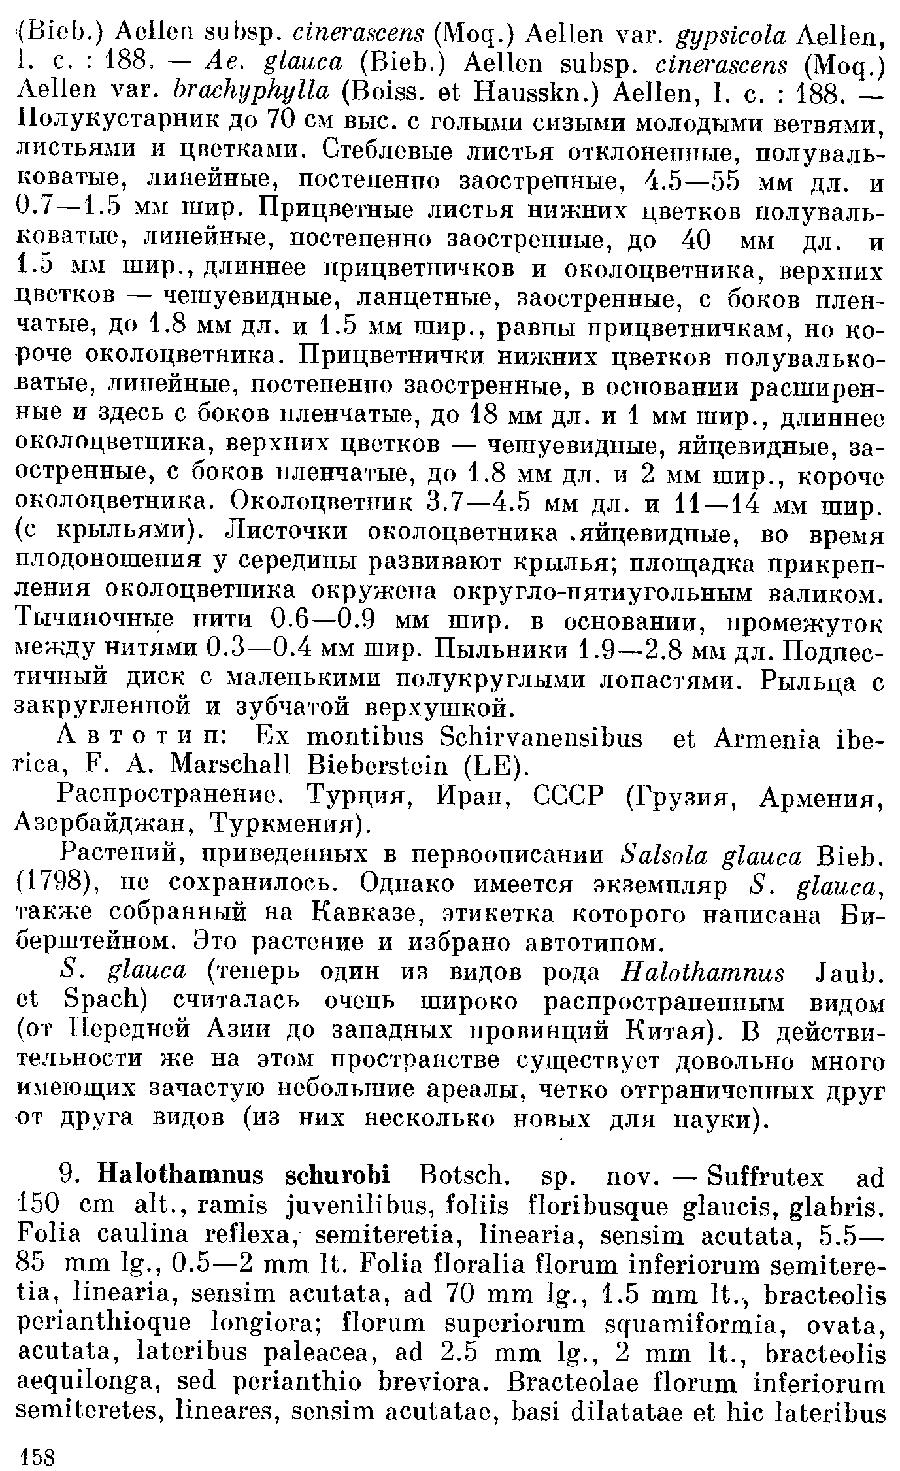 https://forum.plantarium.ru/misc.php?action=pun_attachment&amp;item=27842